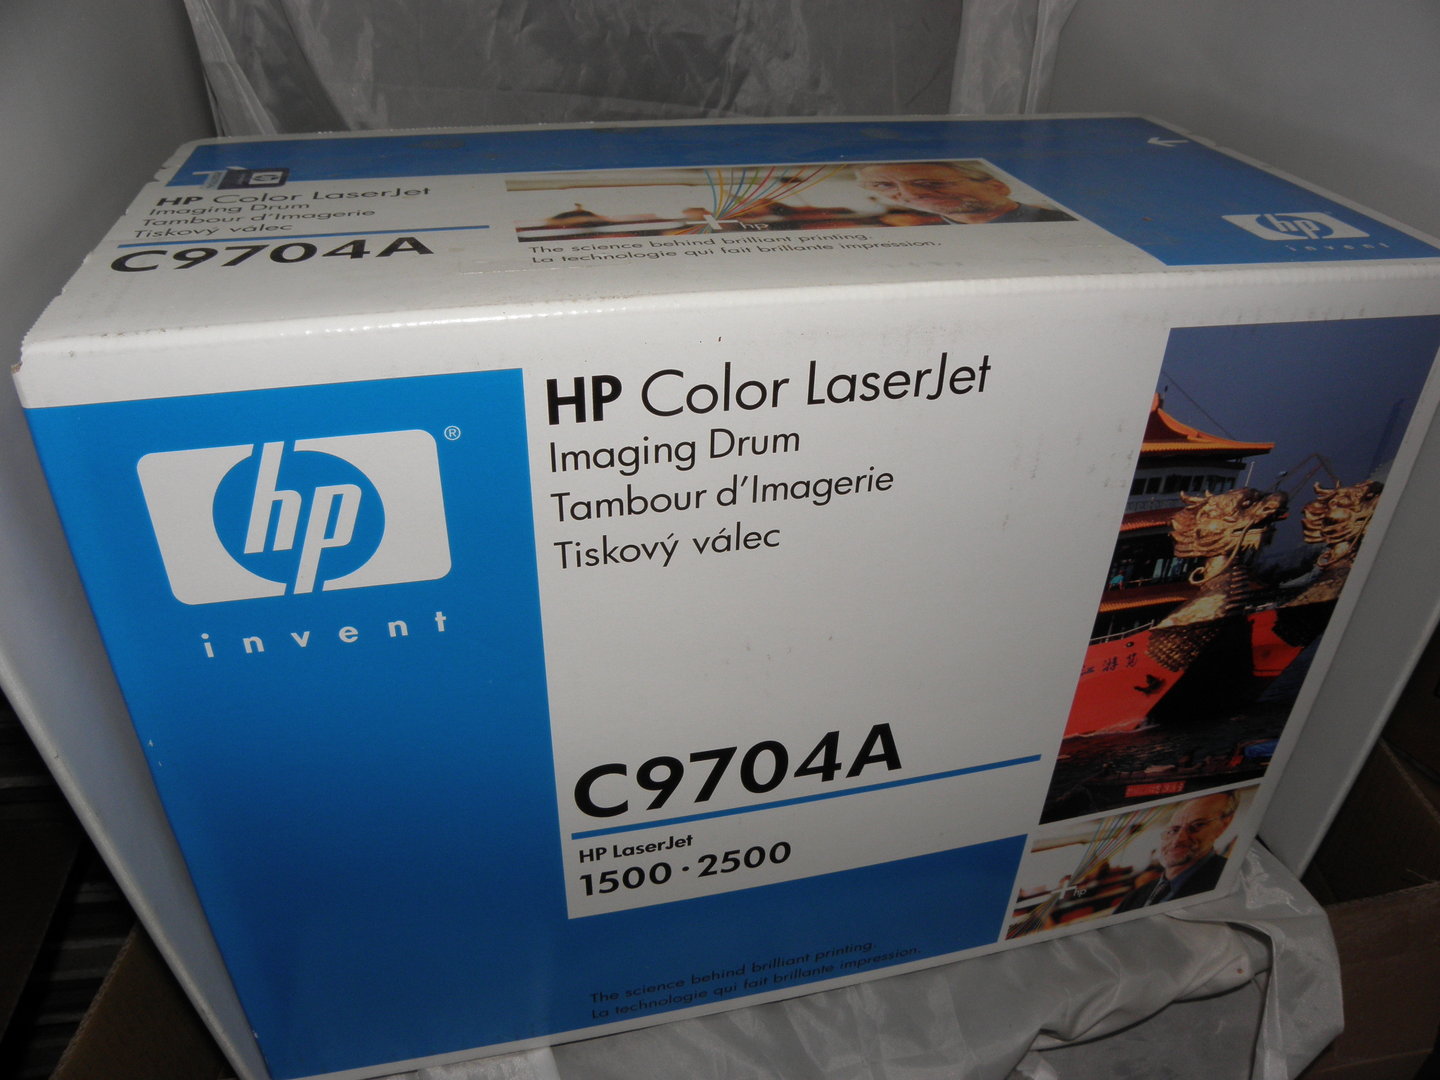 85-13 HP C9704A Bildtrommel für LaserJet 1500/2500 Neu und Original in OVP 